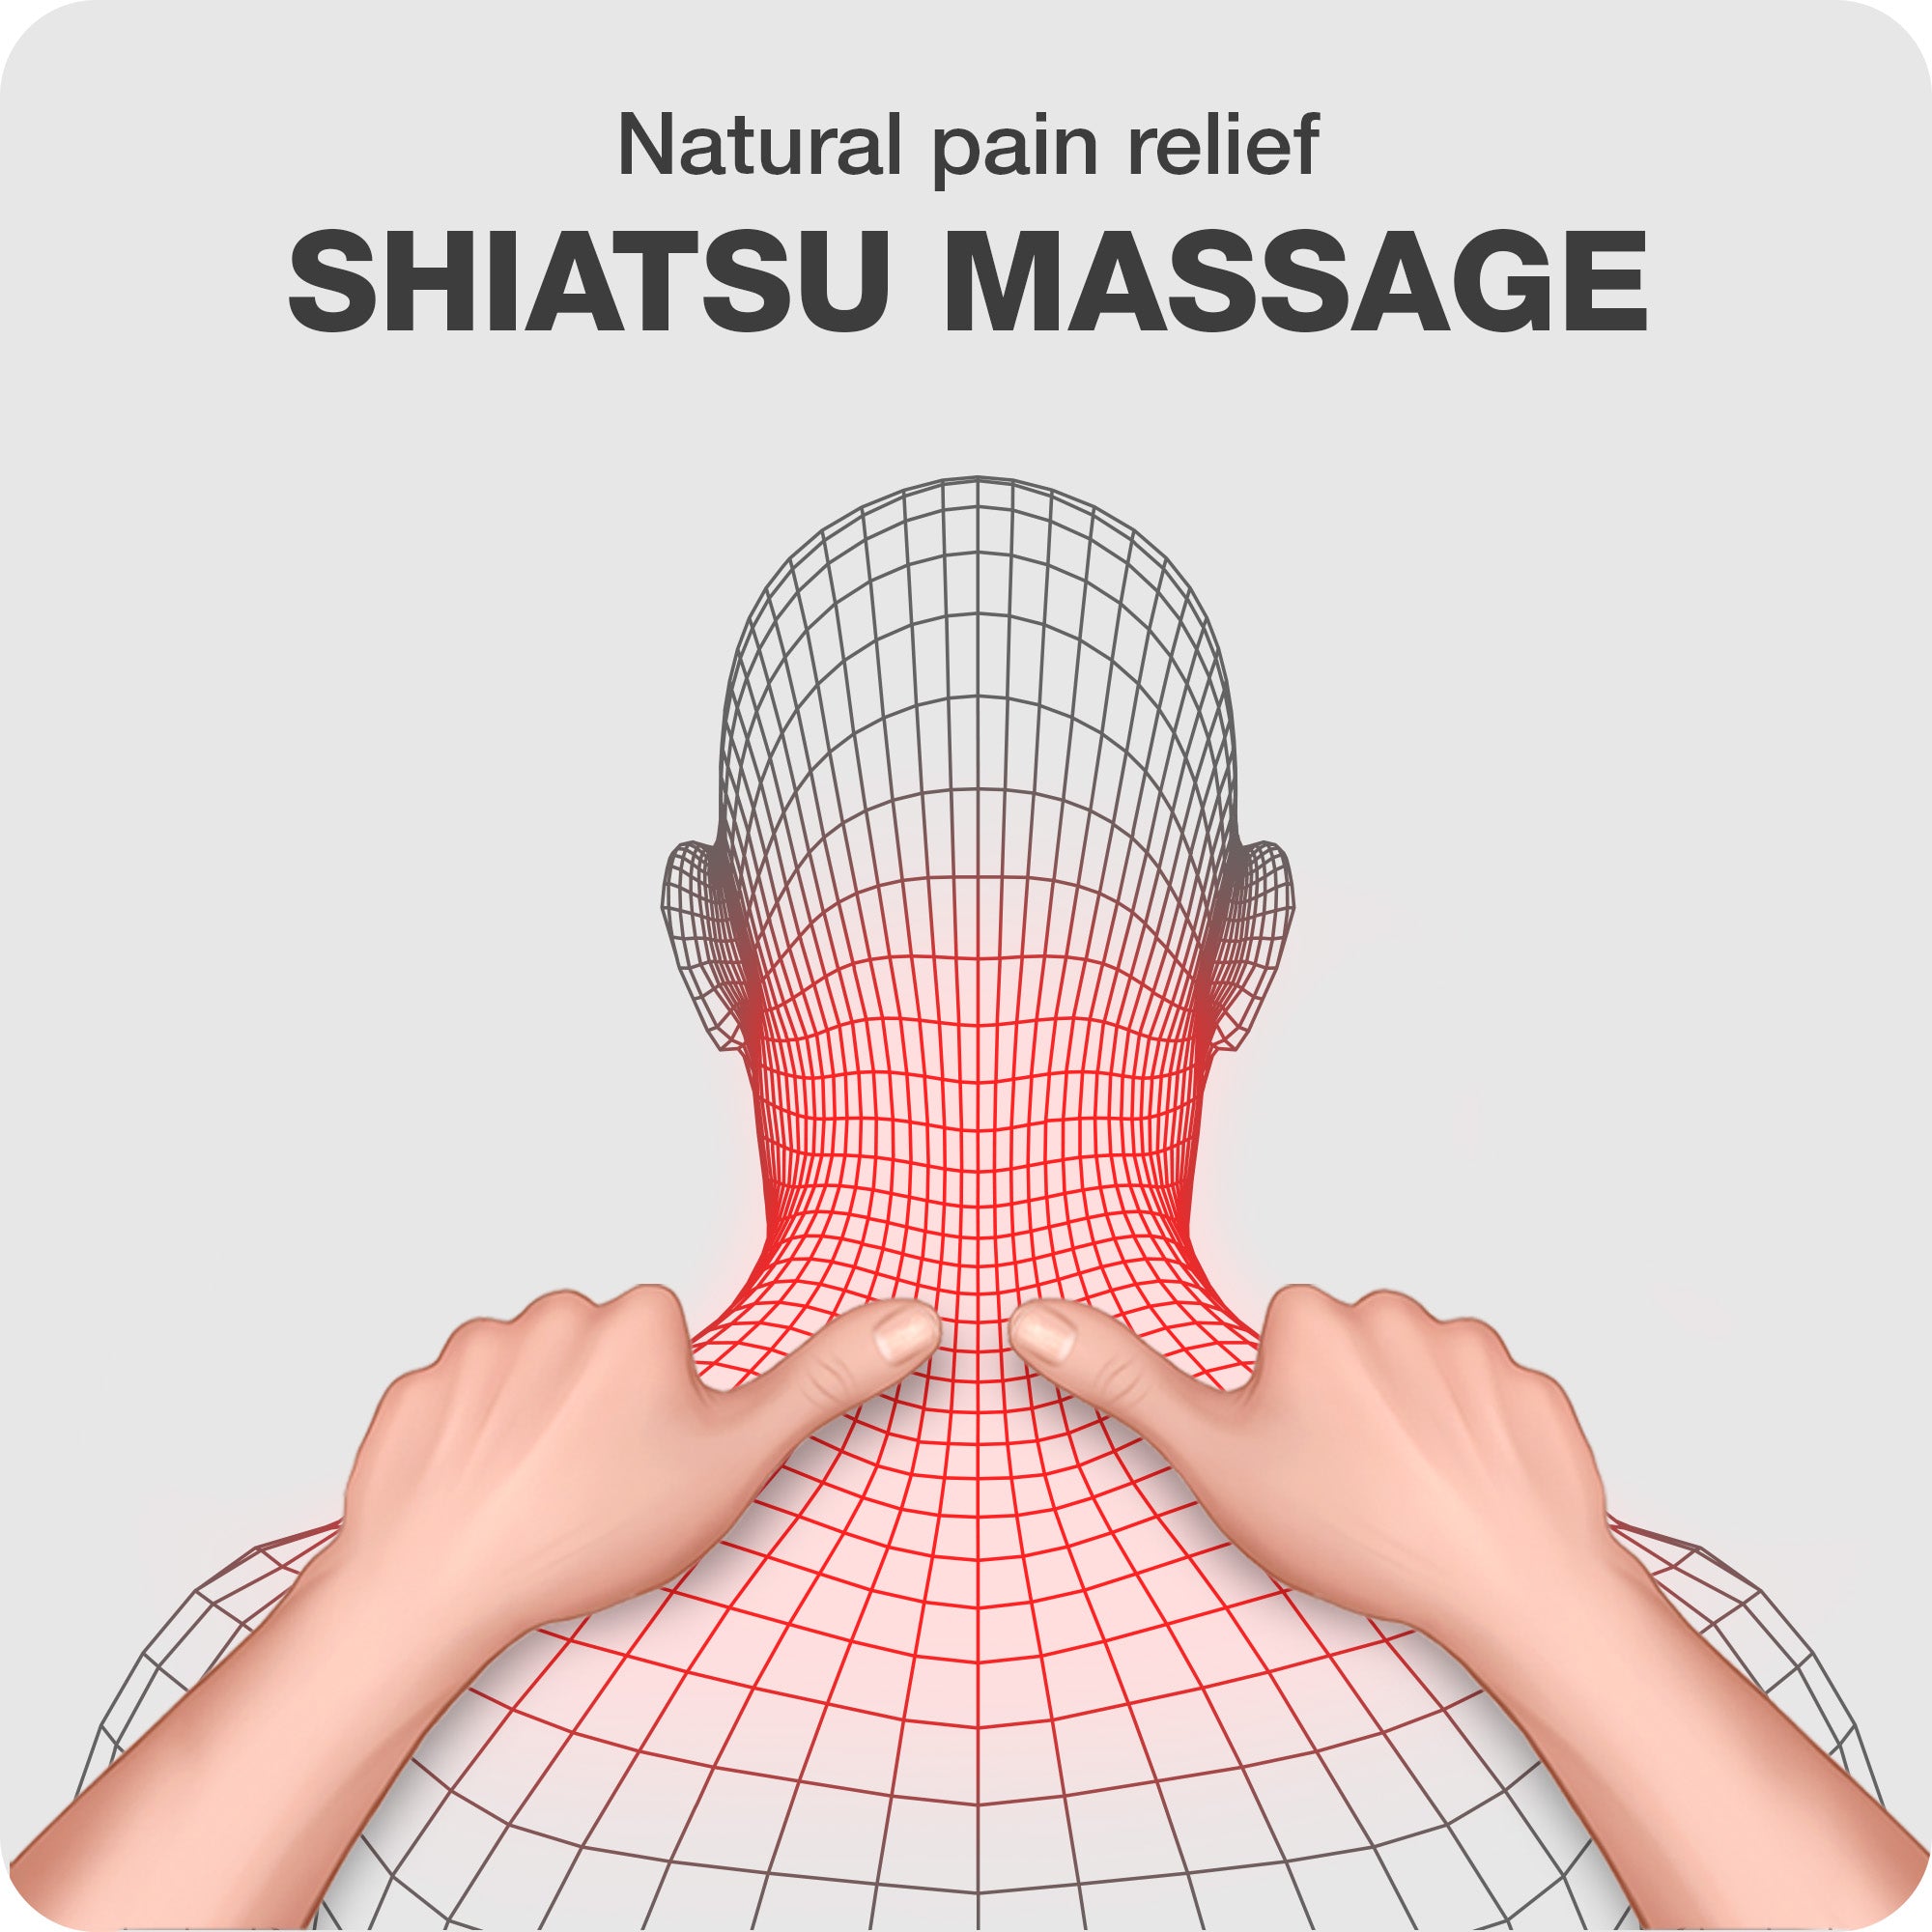 benefit of shiatsu massage